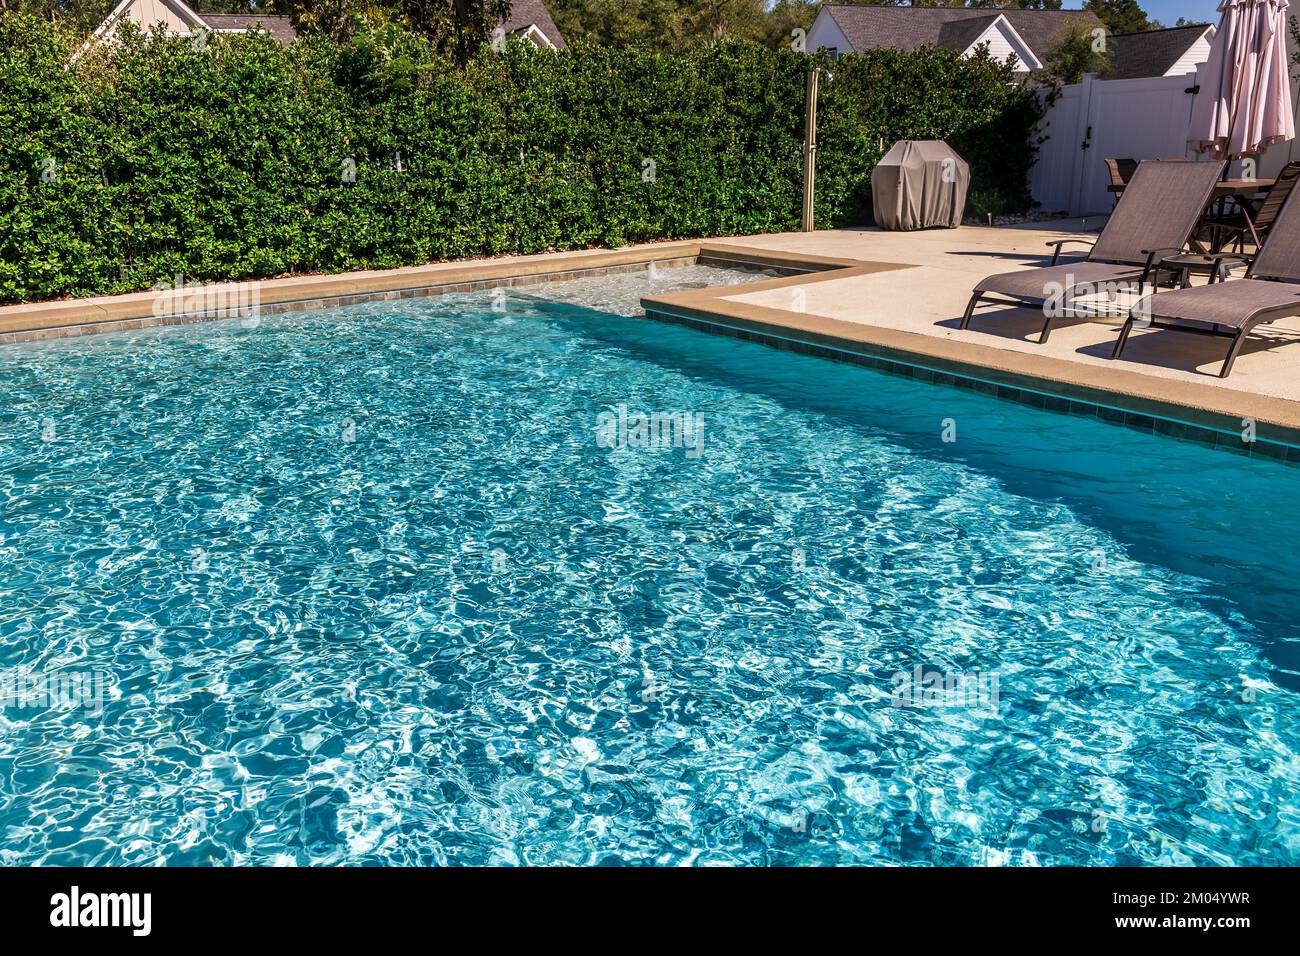 Ein rechteckiger neuer Swimmingpool mit hellbraunen Betonkanten im eingezäunten Garten eines neuen Bauhauses Stockfoto